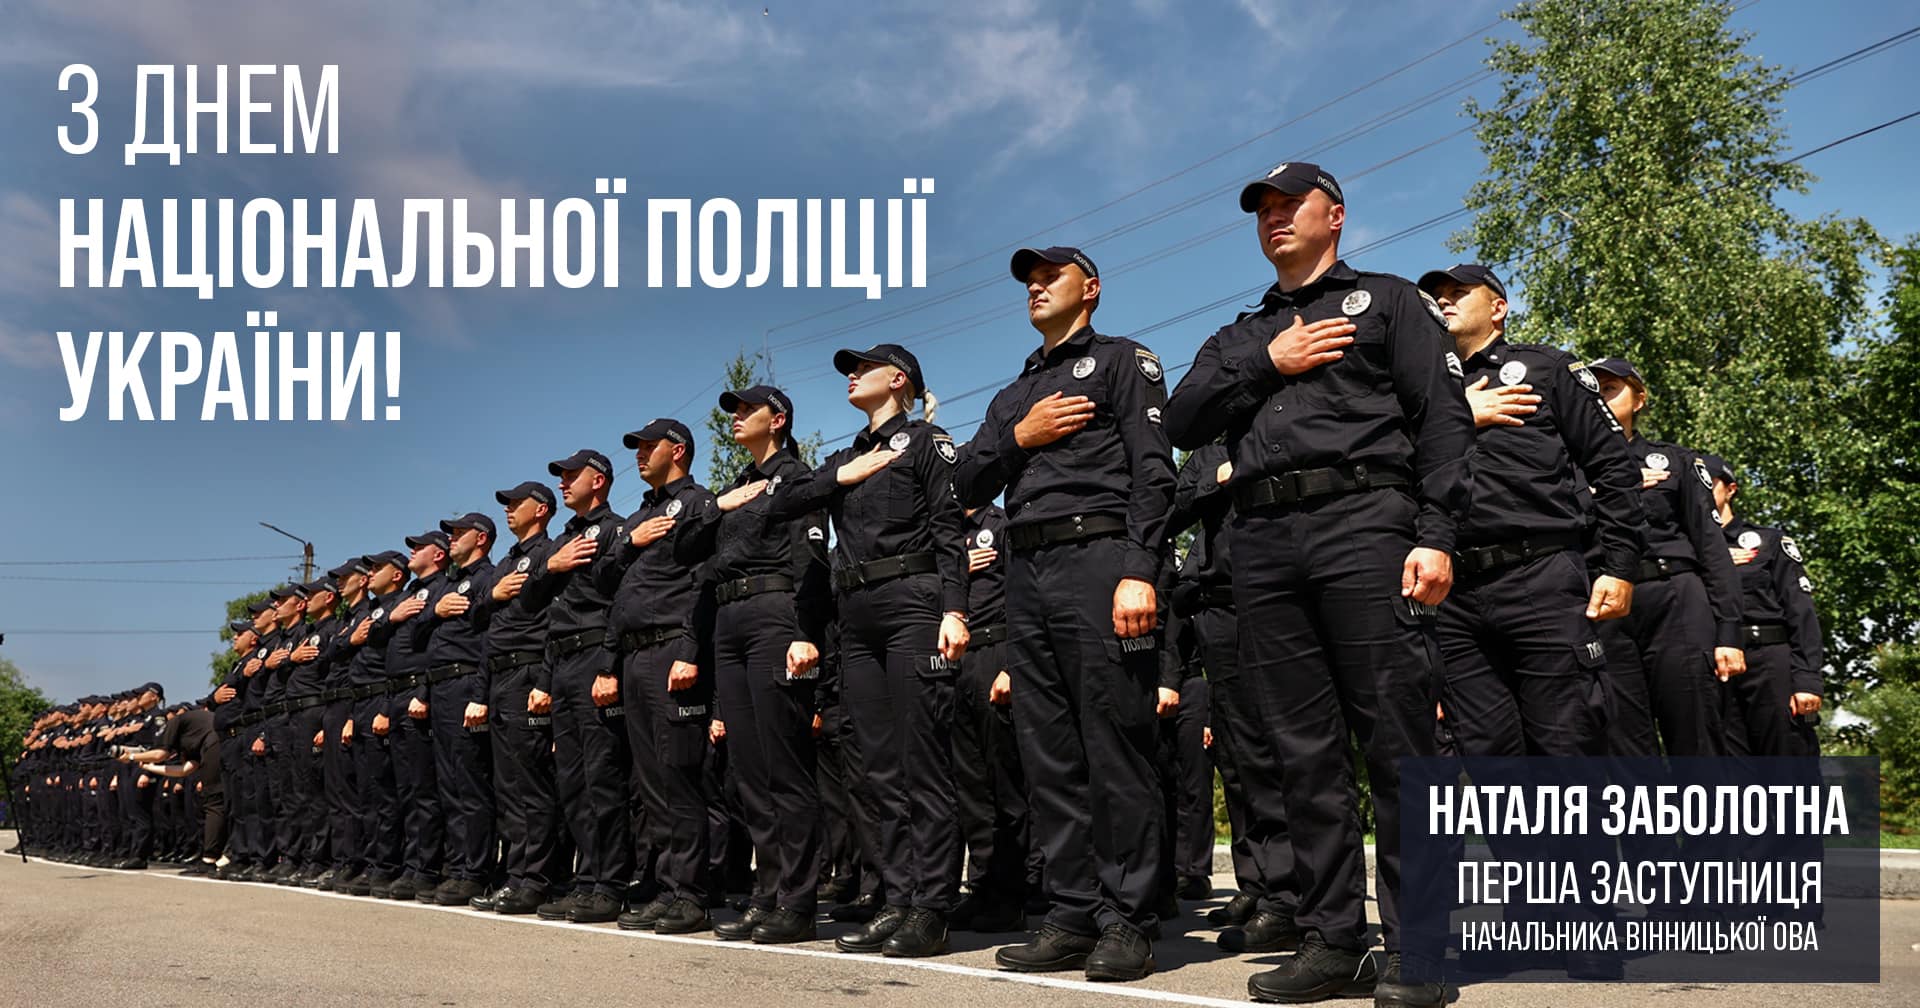 Служити та захищати – основний принцип діяльності Національної поліції України! – Наталя Заболотна